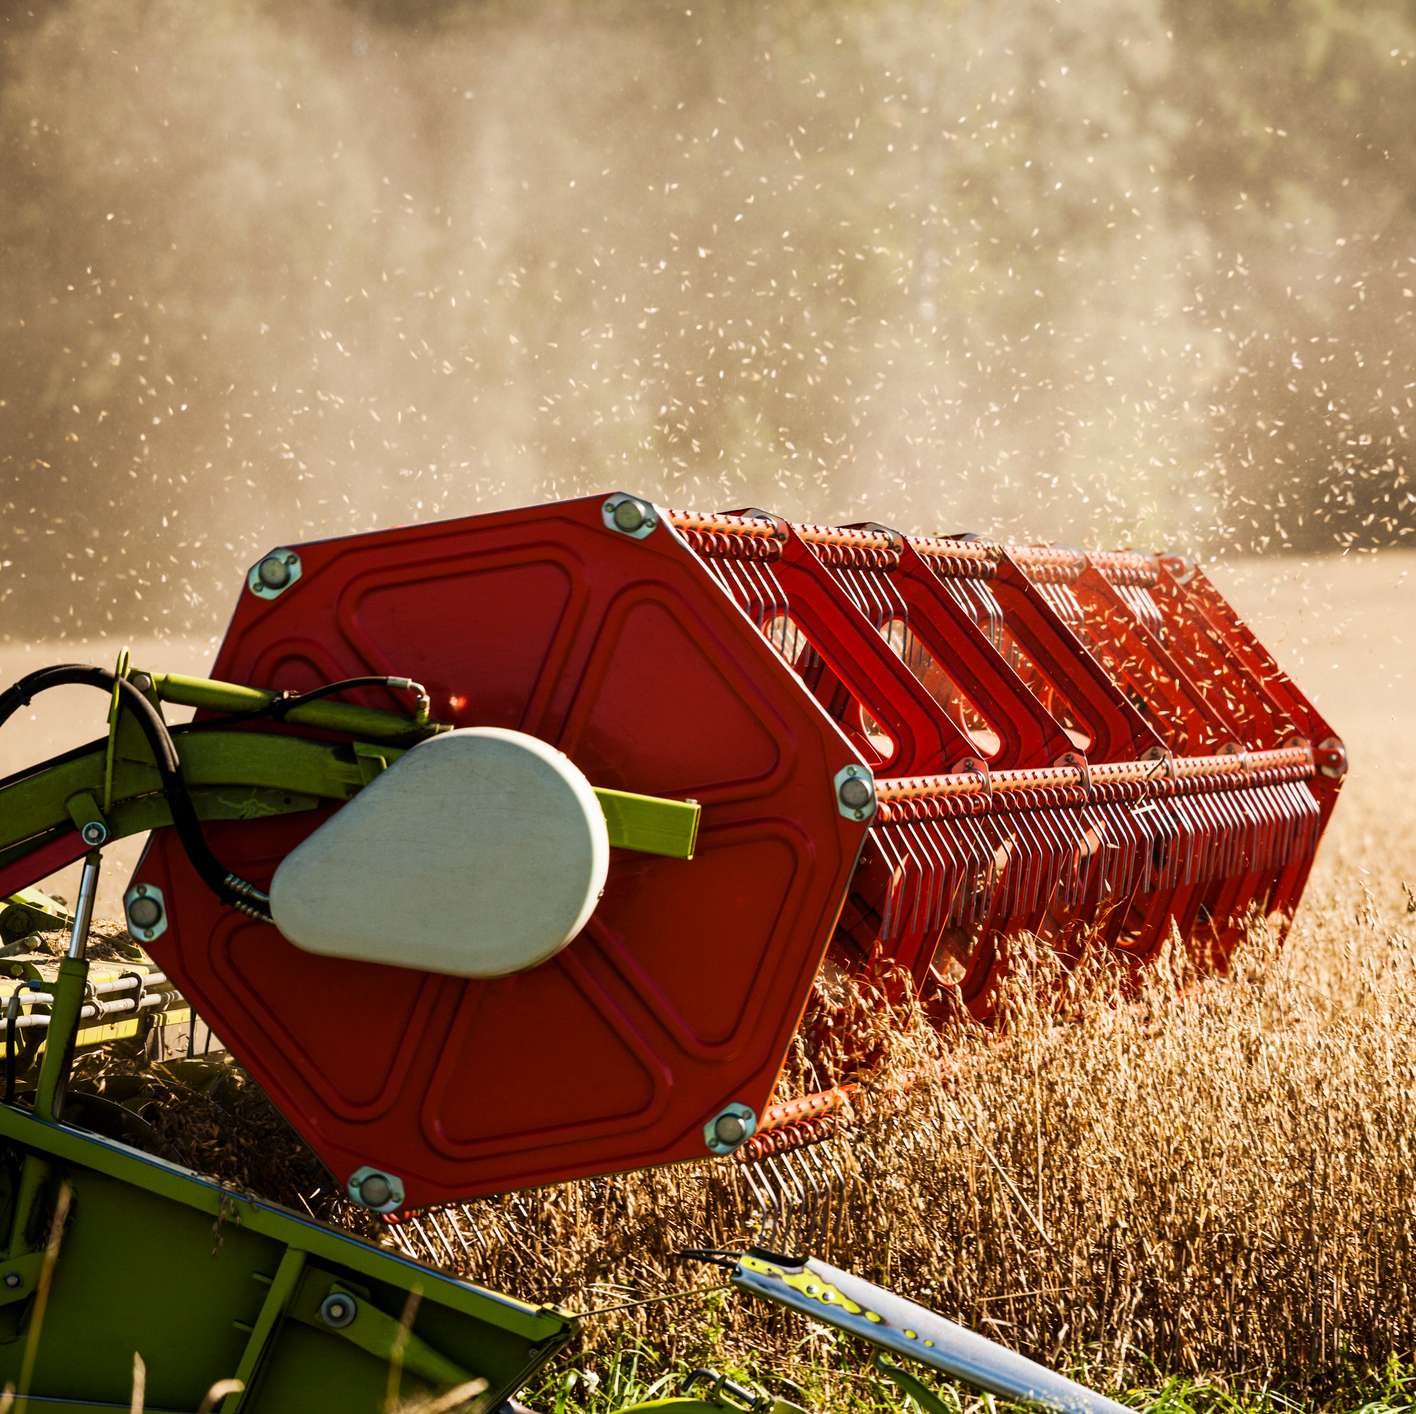 Allianz - Landwirtschaftliche Inhaltsversicherung: Ausschnitt einer landwirtschaftlichen Maschine auf einem Weizenfeld